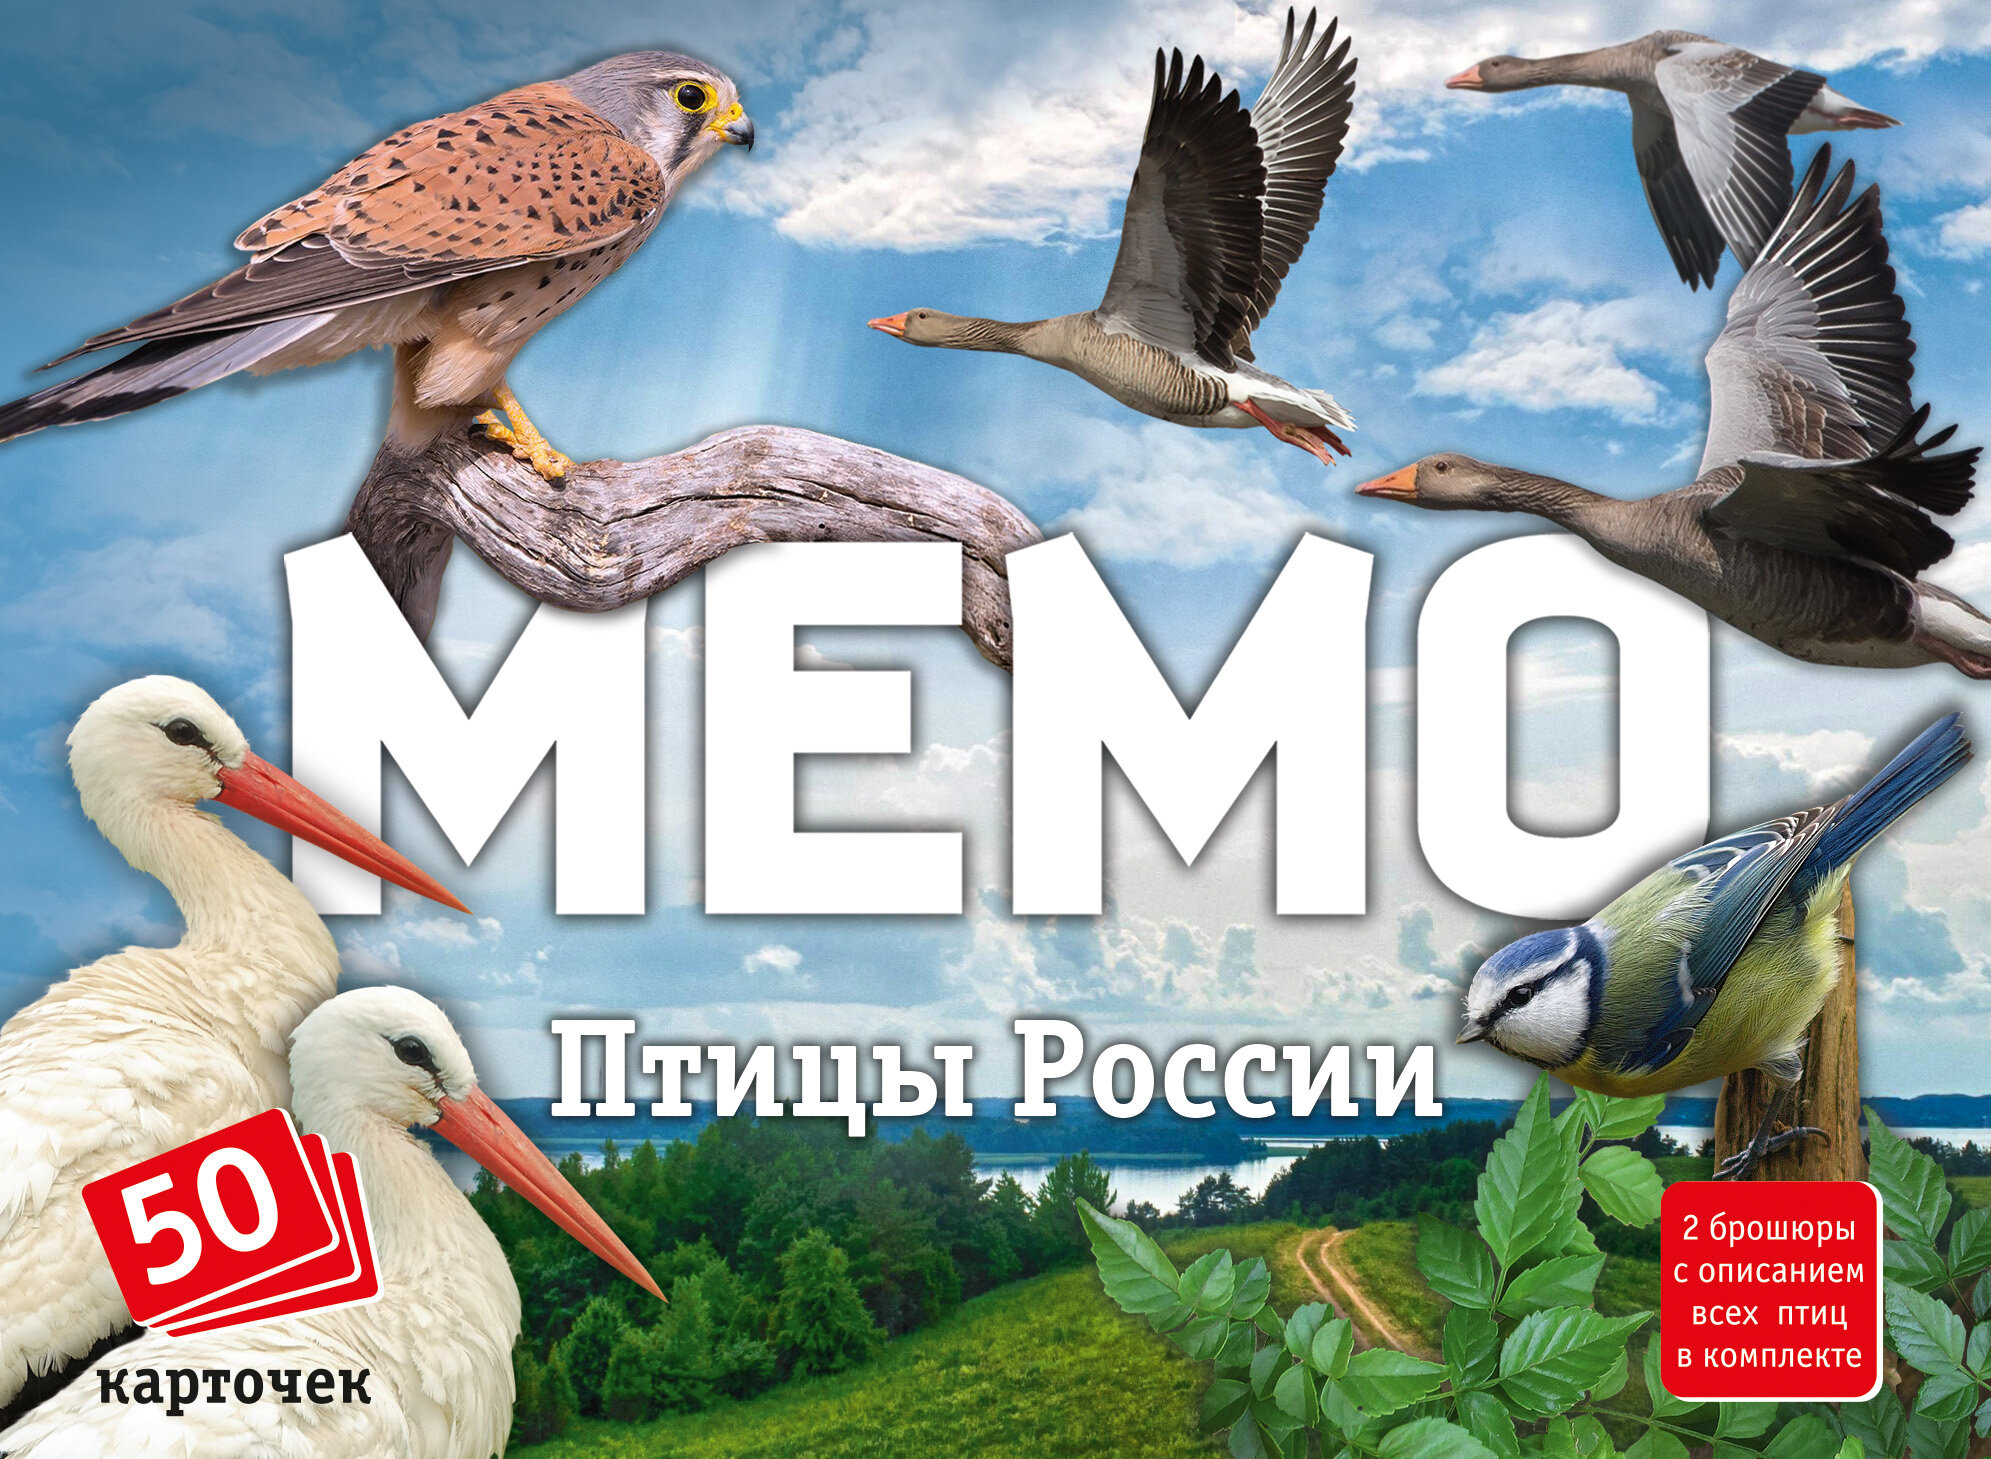 Мемо "Птицы России" артикул 8647 (50 карточек, в комплекте 2 брошюры) /48